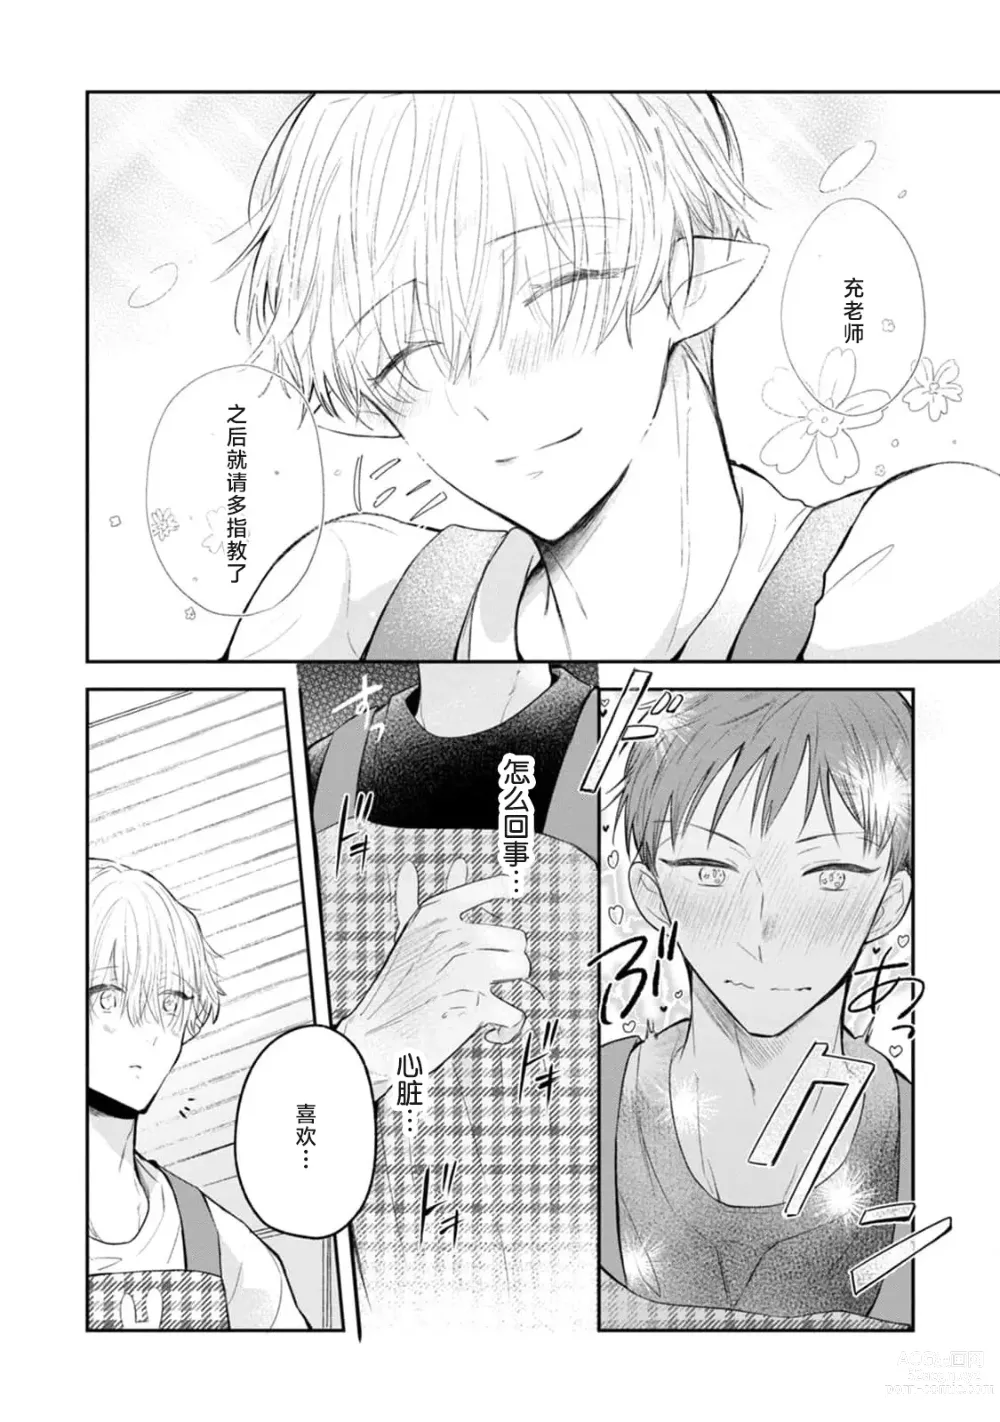 Page 6 of manga 叶羽老师全部是第一次 1-4